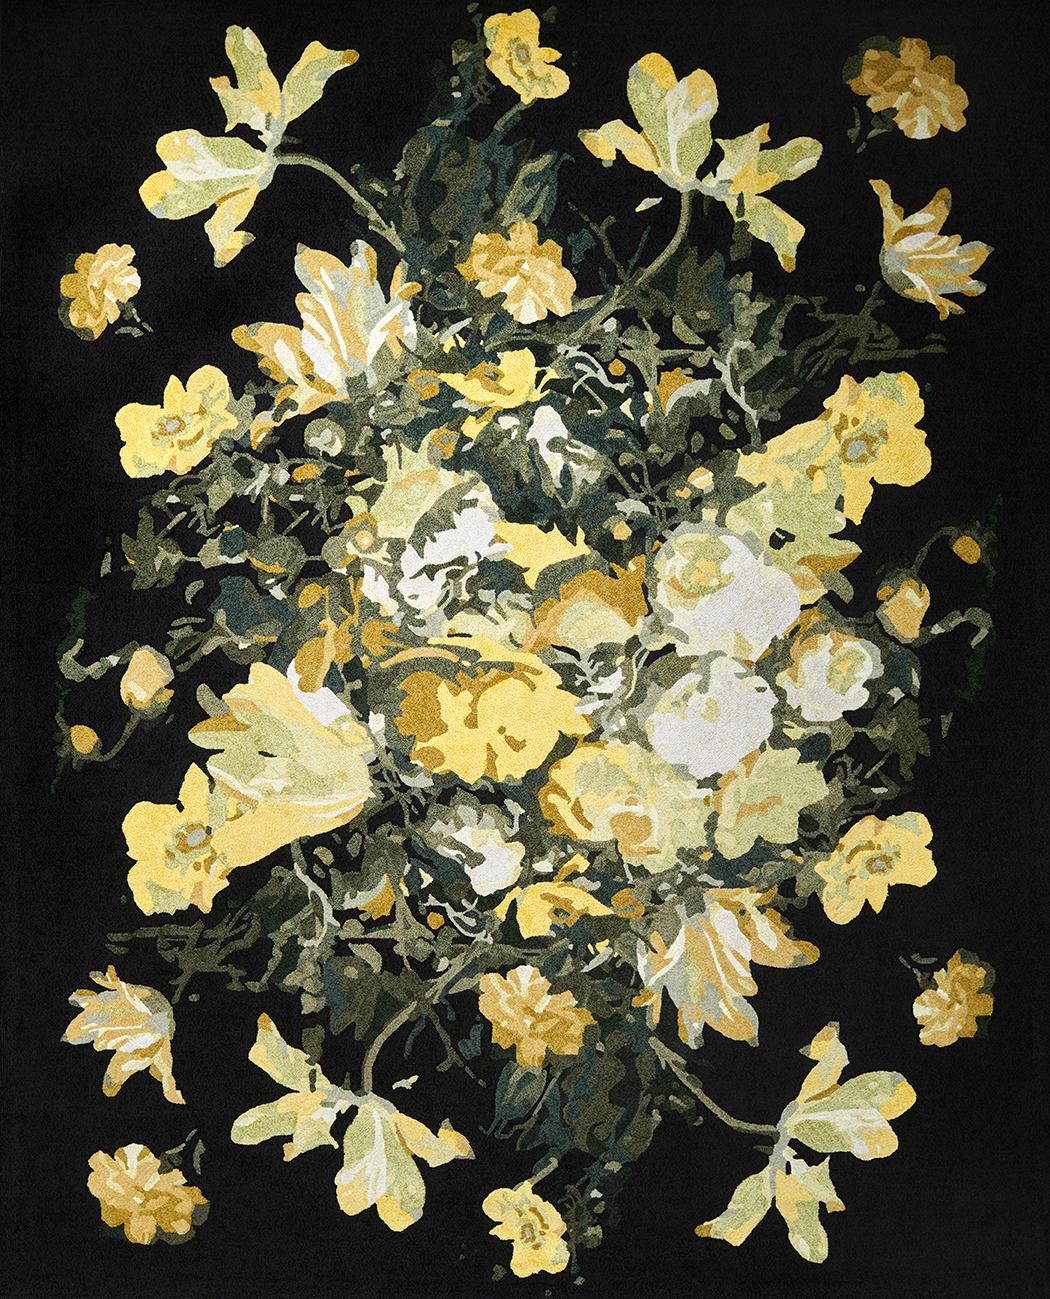 Composé d'arrangements floraux superposés, Cedro apporte une explosion ludique de couleurs et de textures, en utilisant de la laine tondue à la pointe et de la soie fine pour définir son élégance.

Erik Lindstrom propose une sélection de motifs